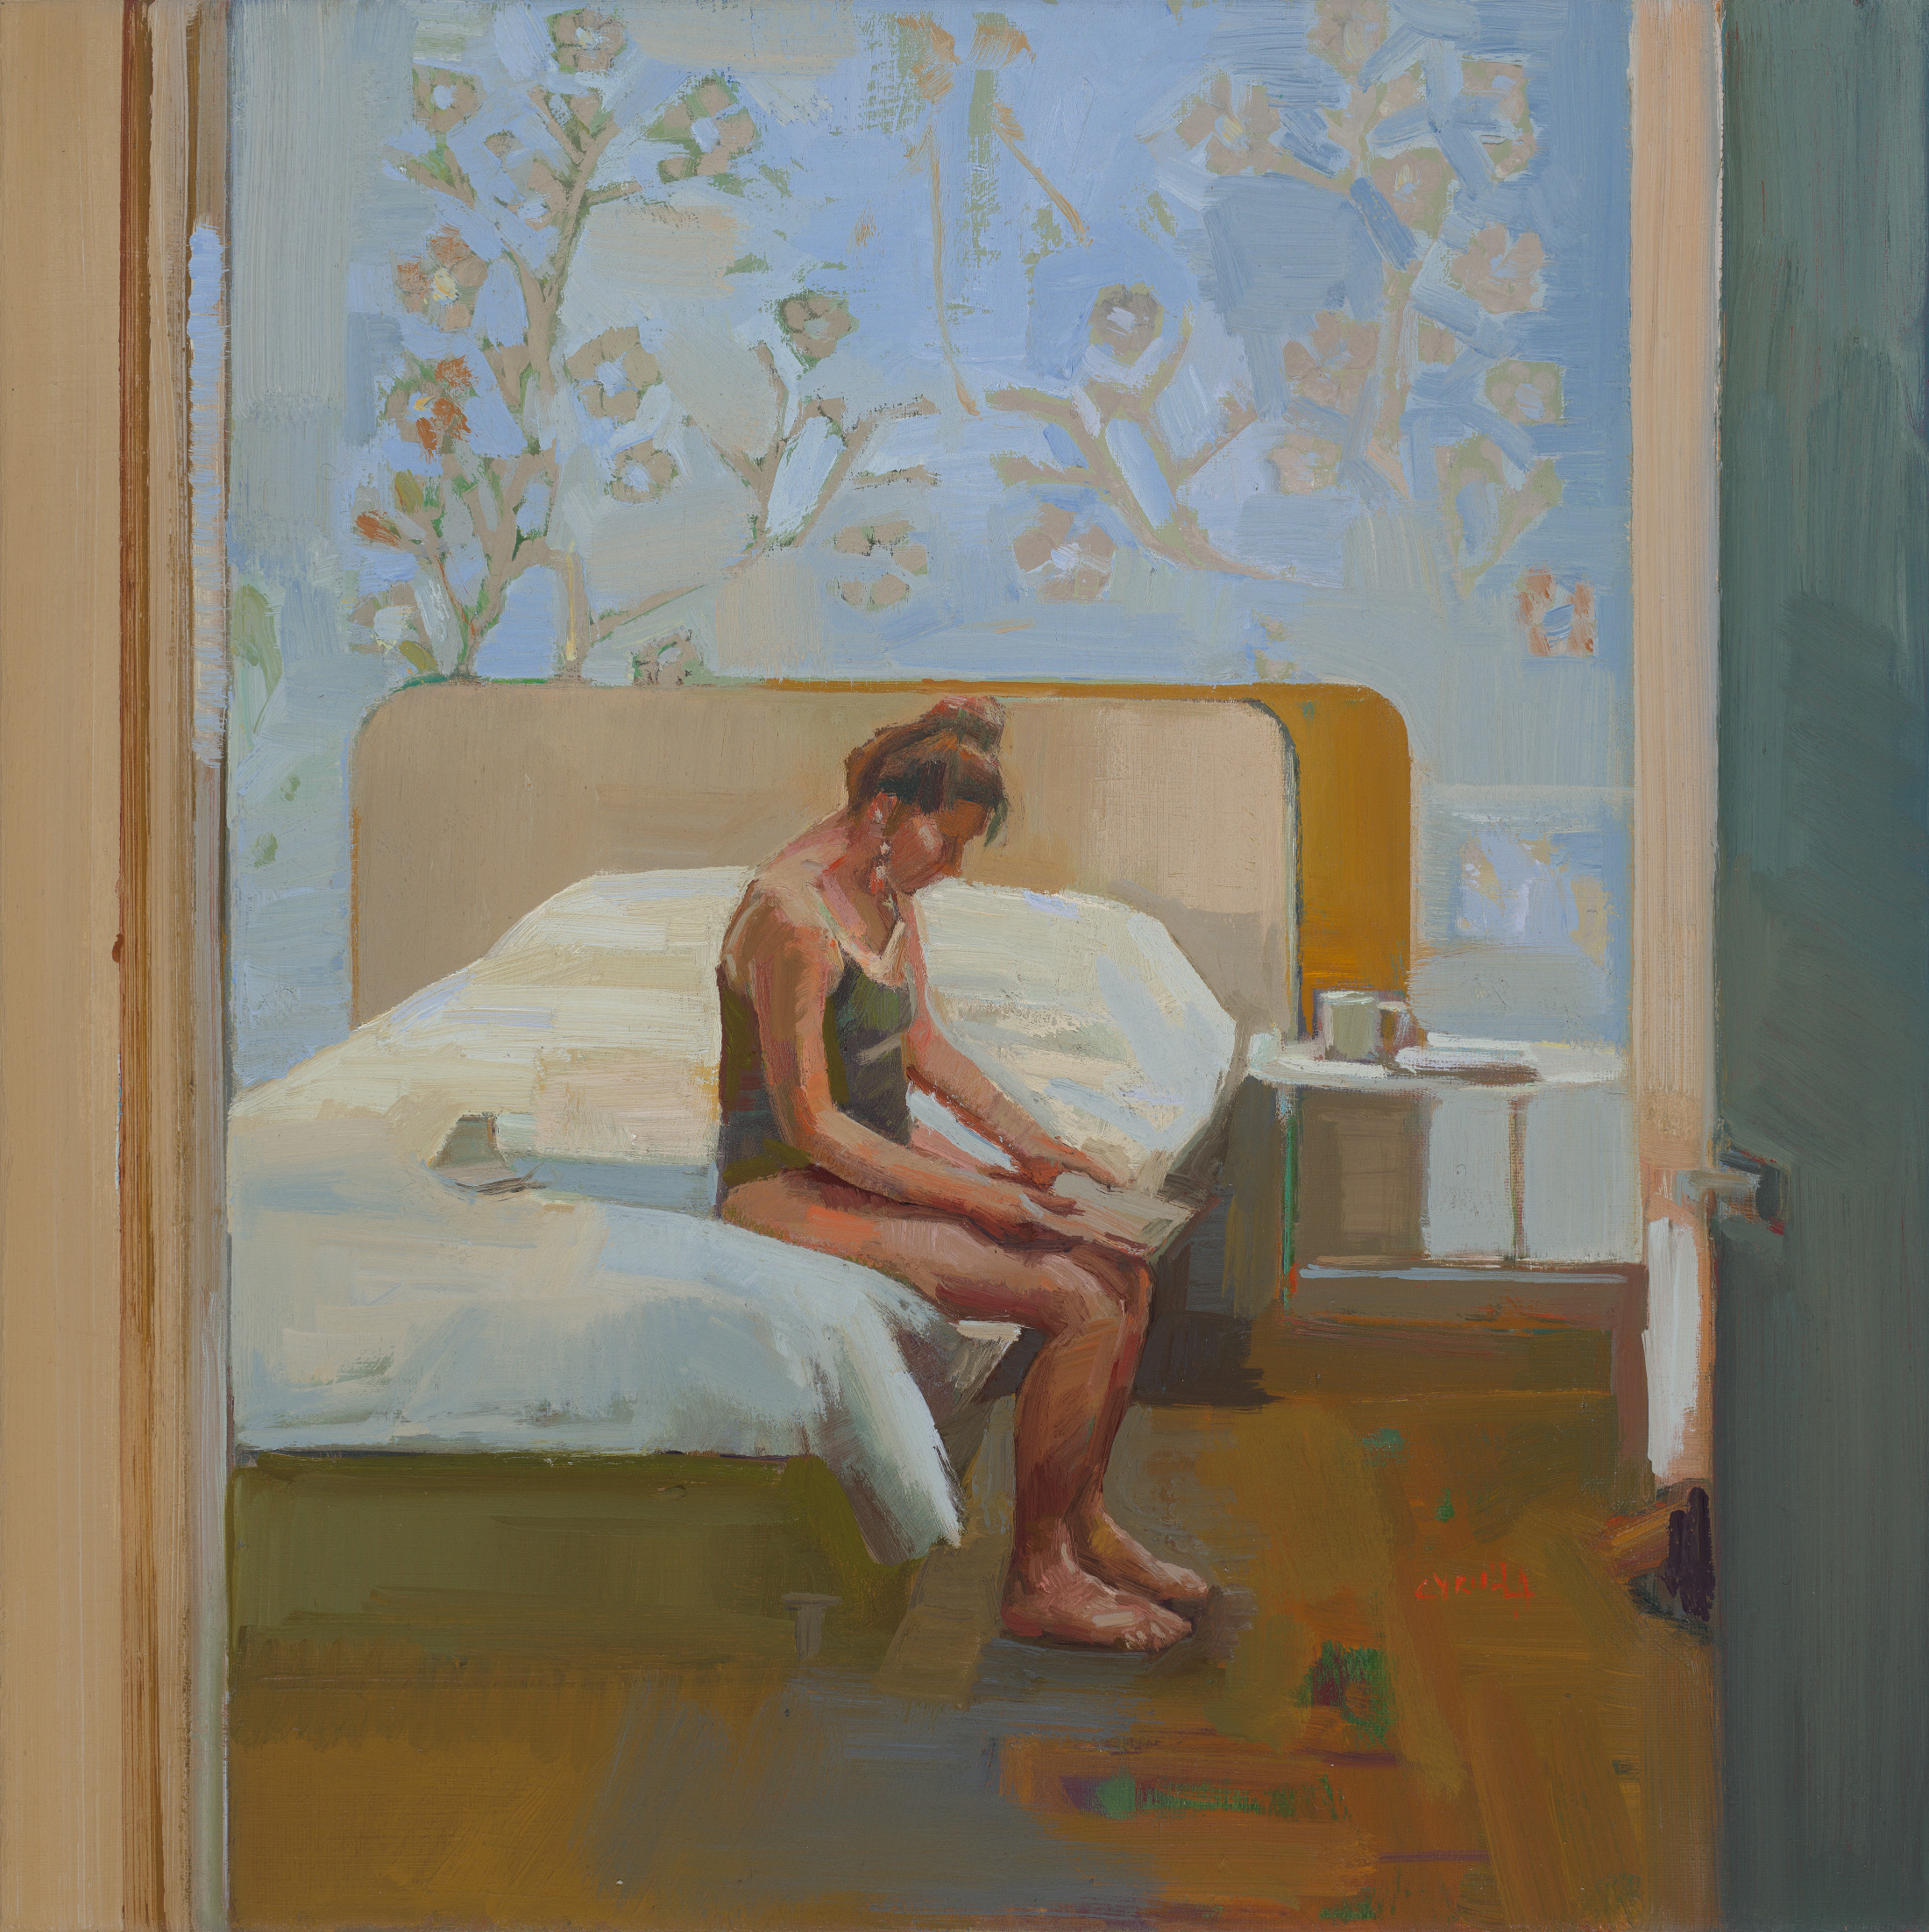 Dagmar Cyrulla 'After Hopper with blue wallpaper and flower motif' oil on linen 40 x 40cm $4,900